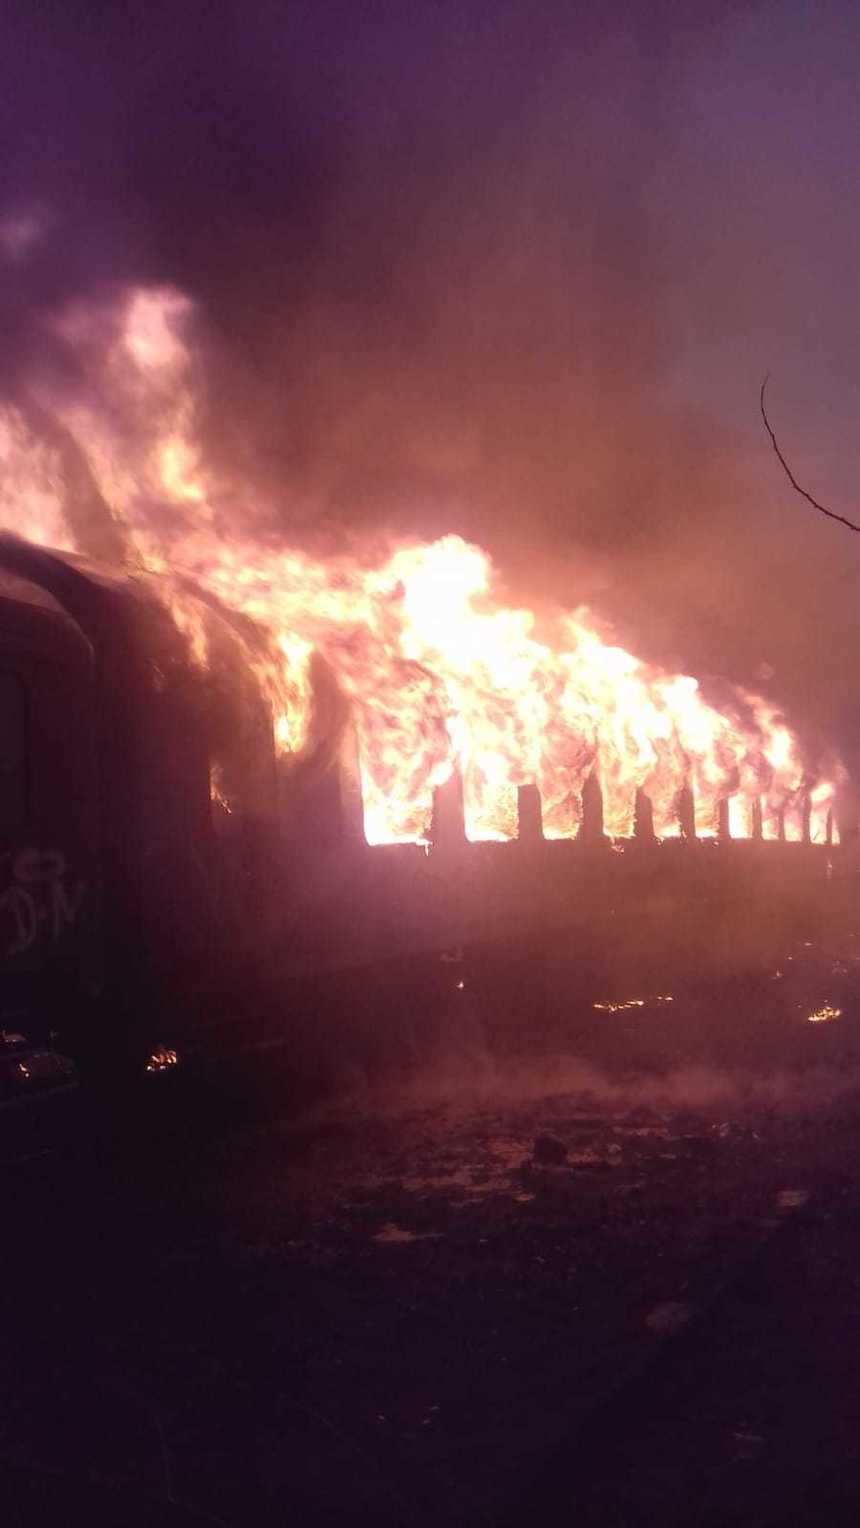 Caraş-Severin: Incendiu puternic în gara Oraviţa, fiind afectate mai multe vagoane de tren dezafectate. FOTO/ VIDEO